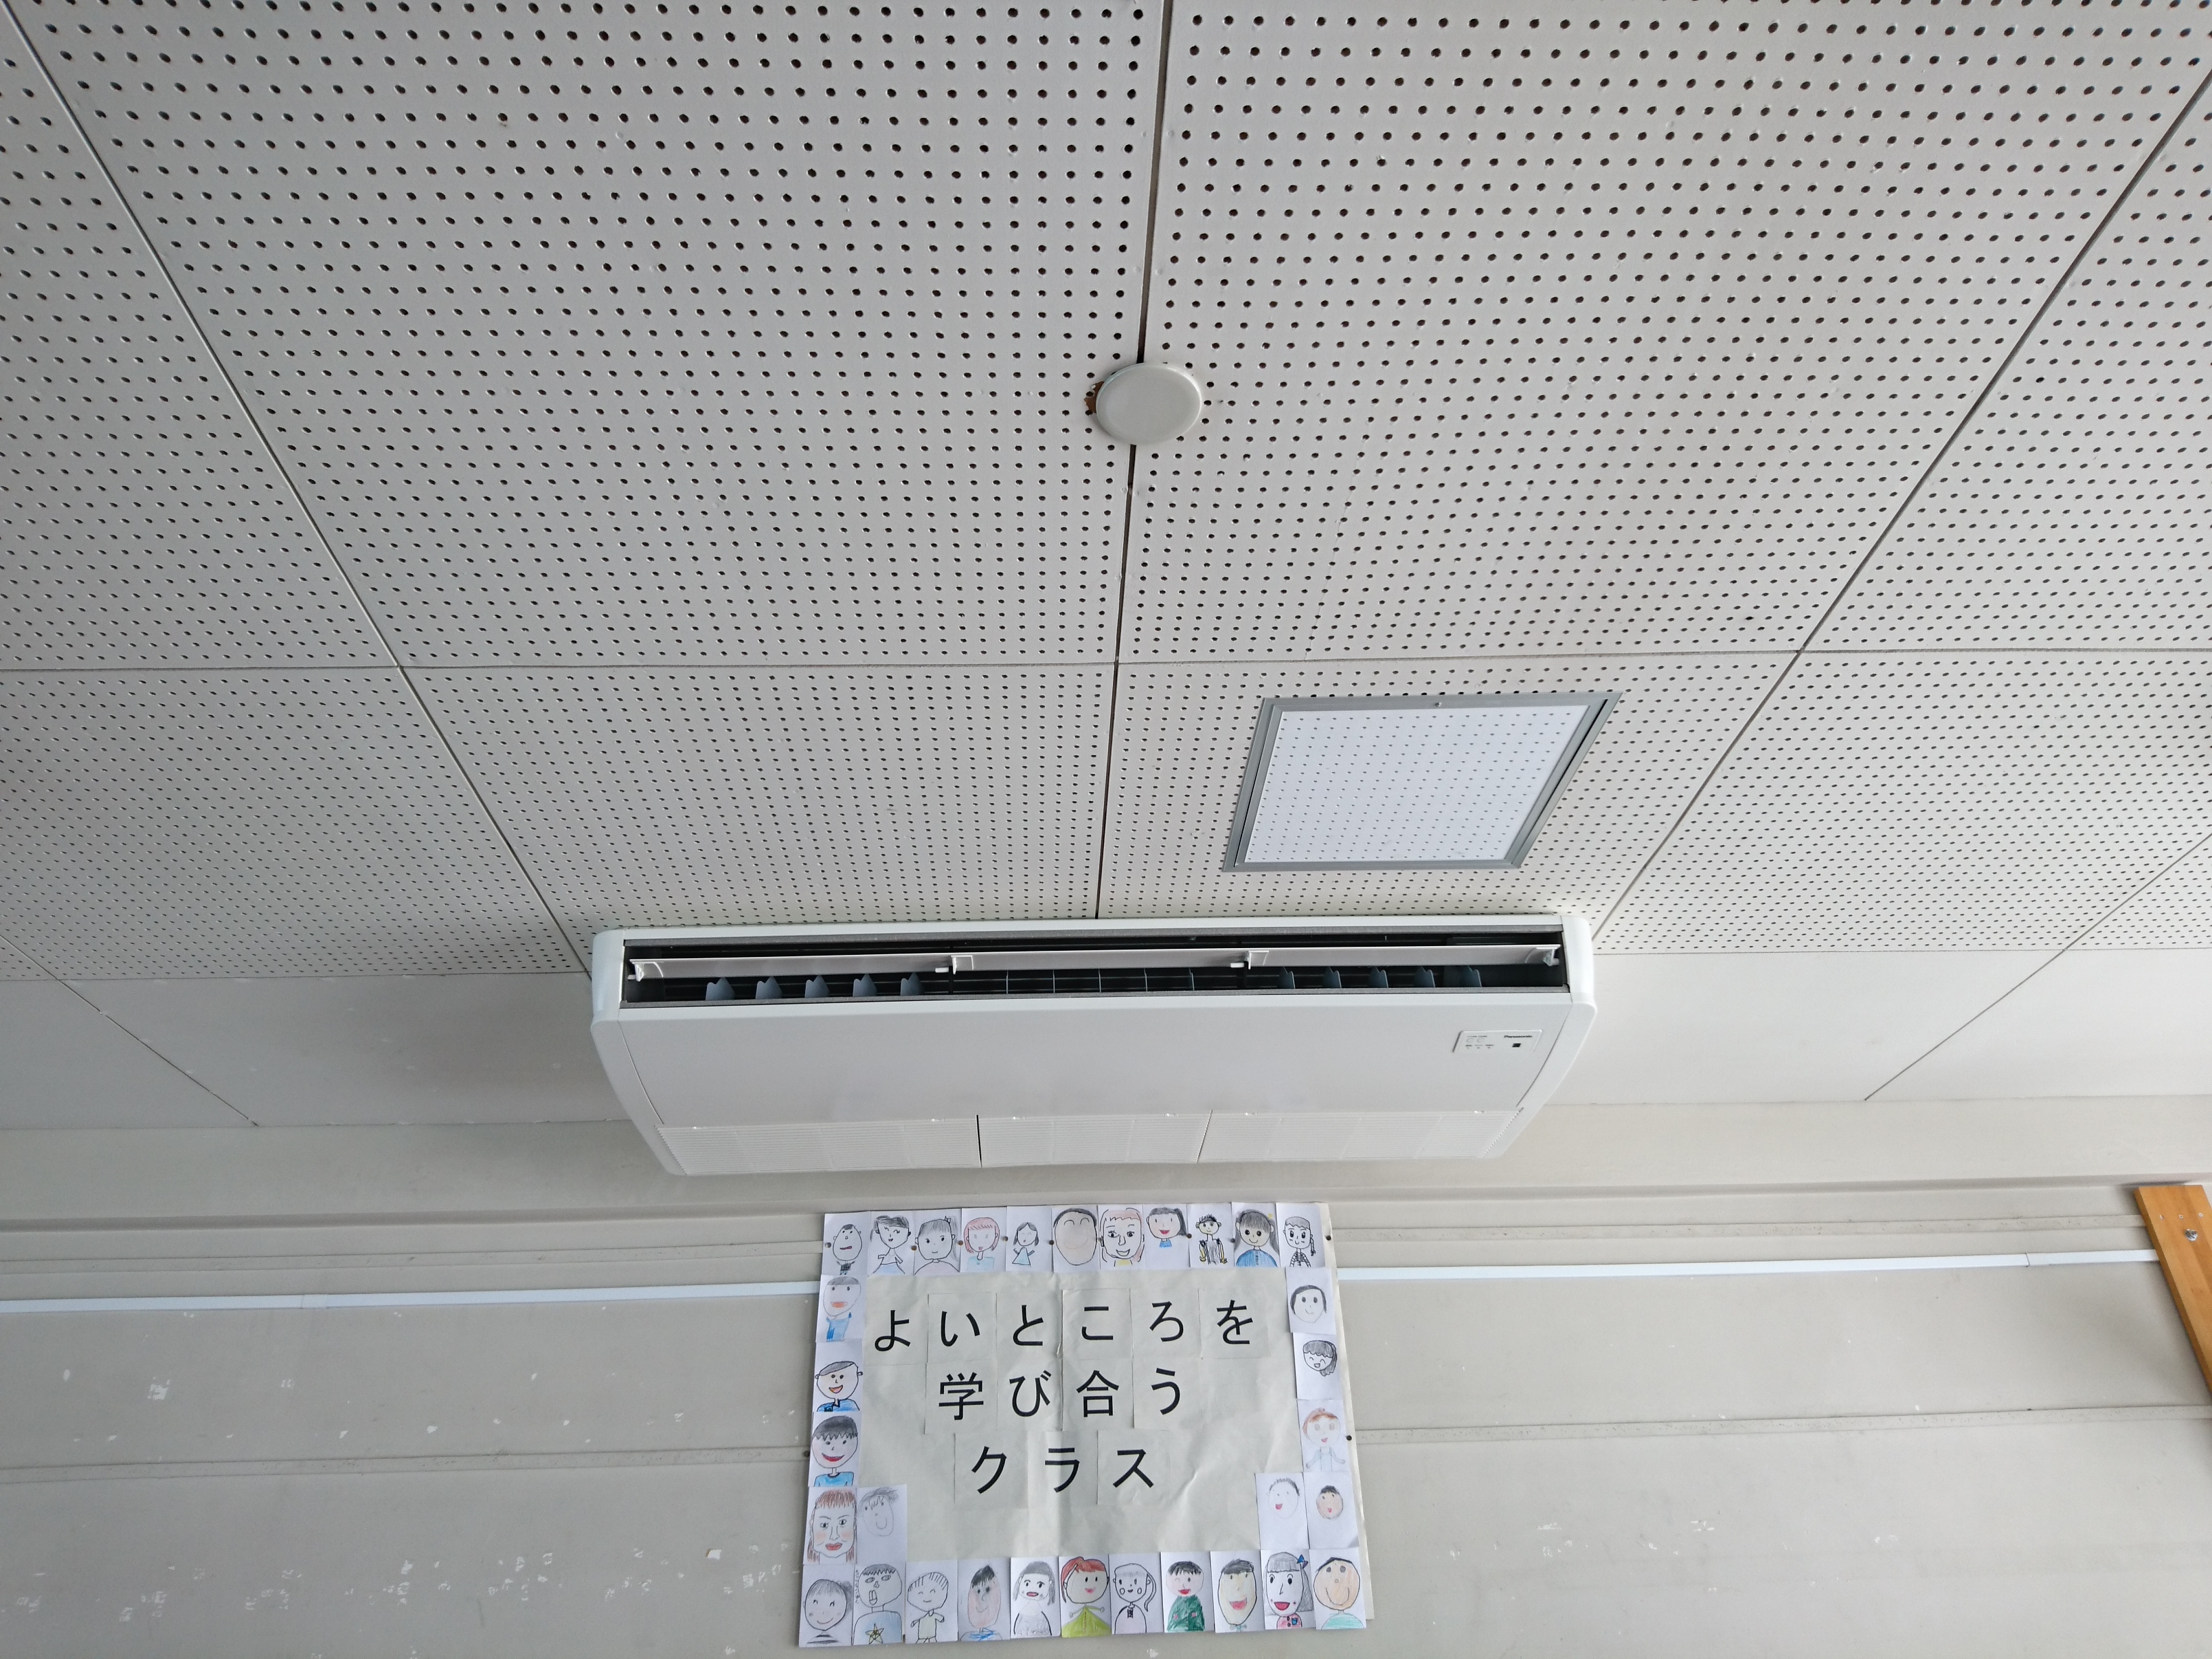 小学校でのエアコンの設置状況の拡大写真です